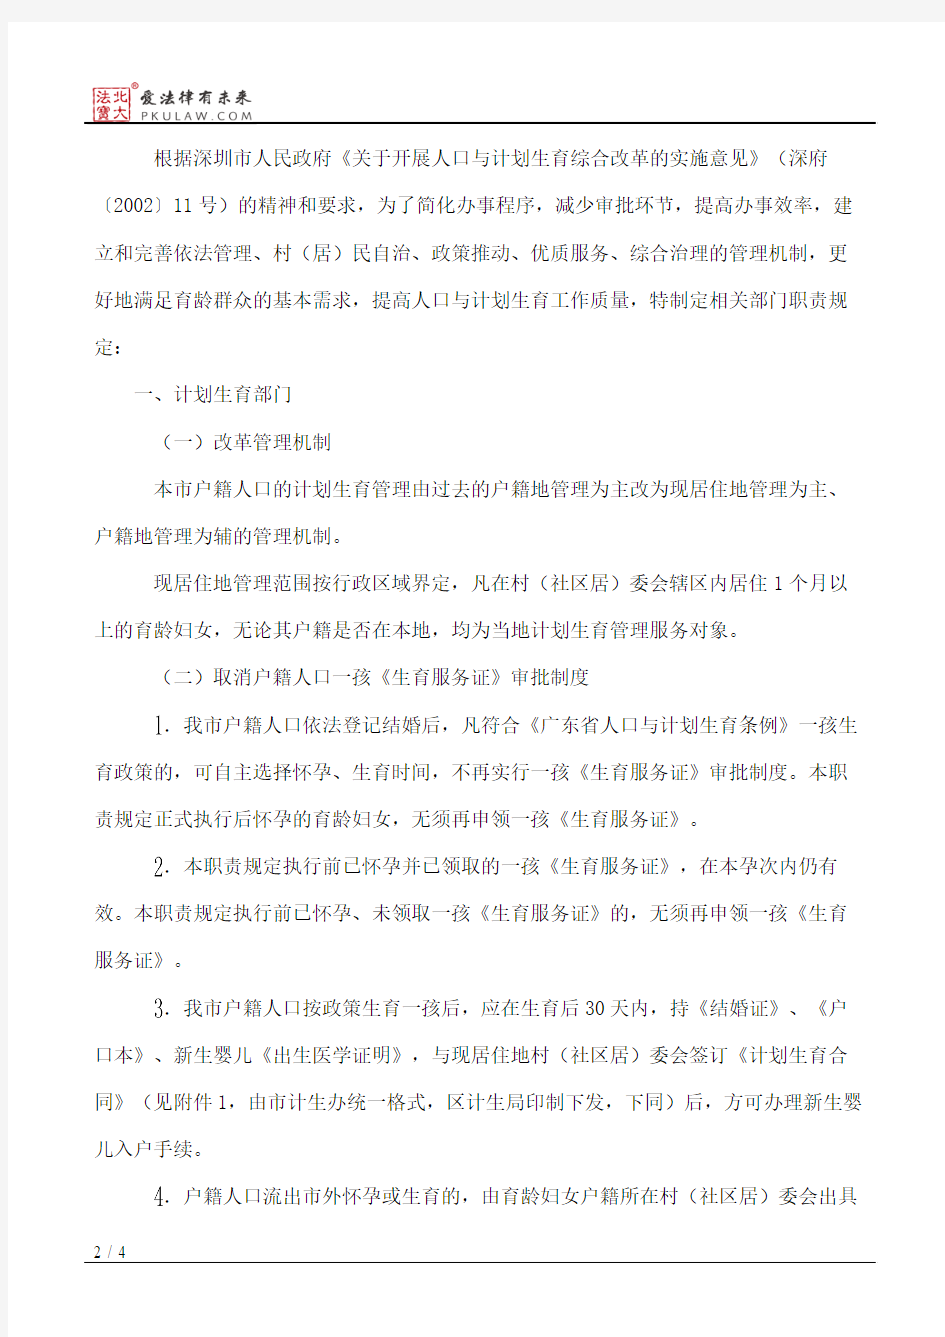 深圳市人民政府计划生育办公室、深圳市公安局、深圳市卫生局、深